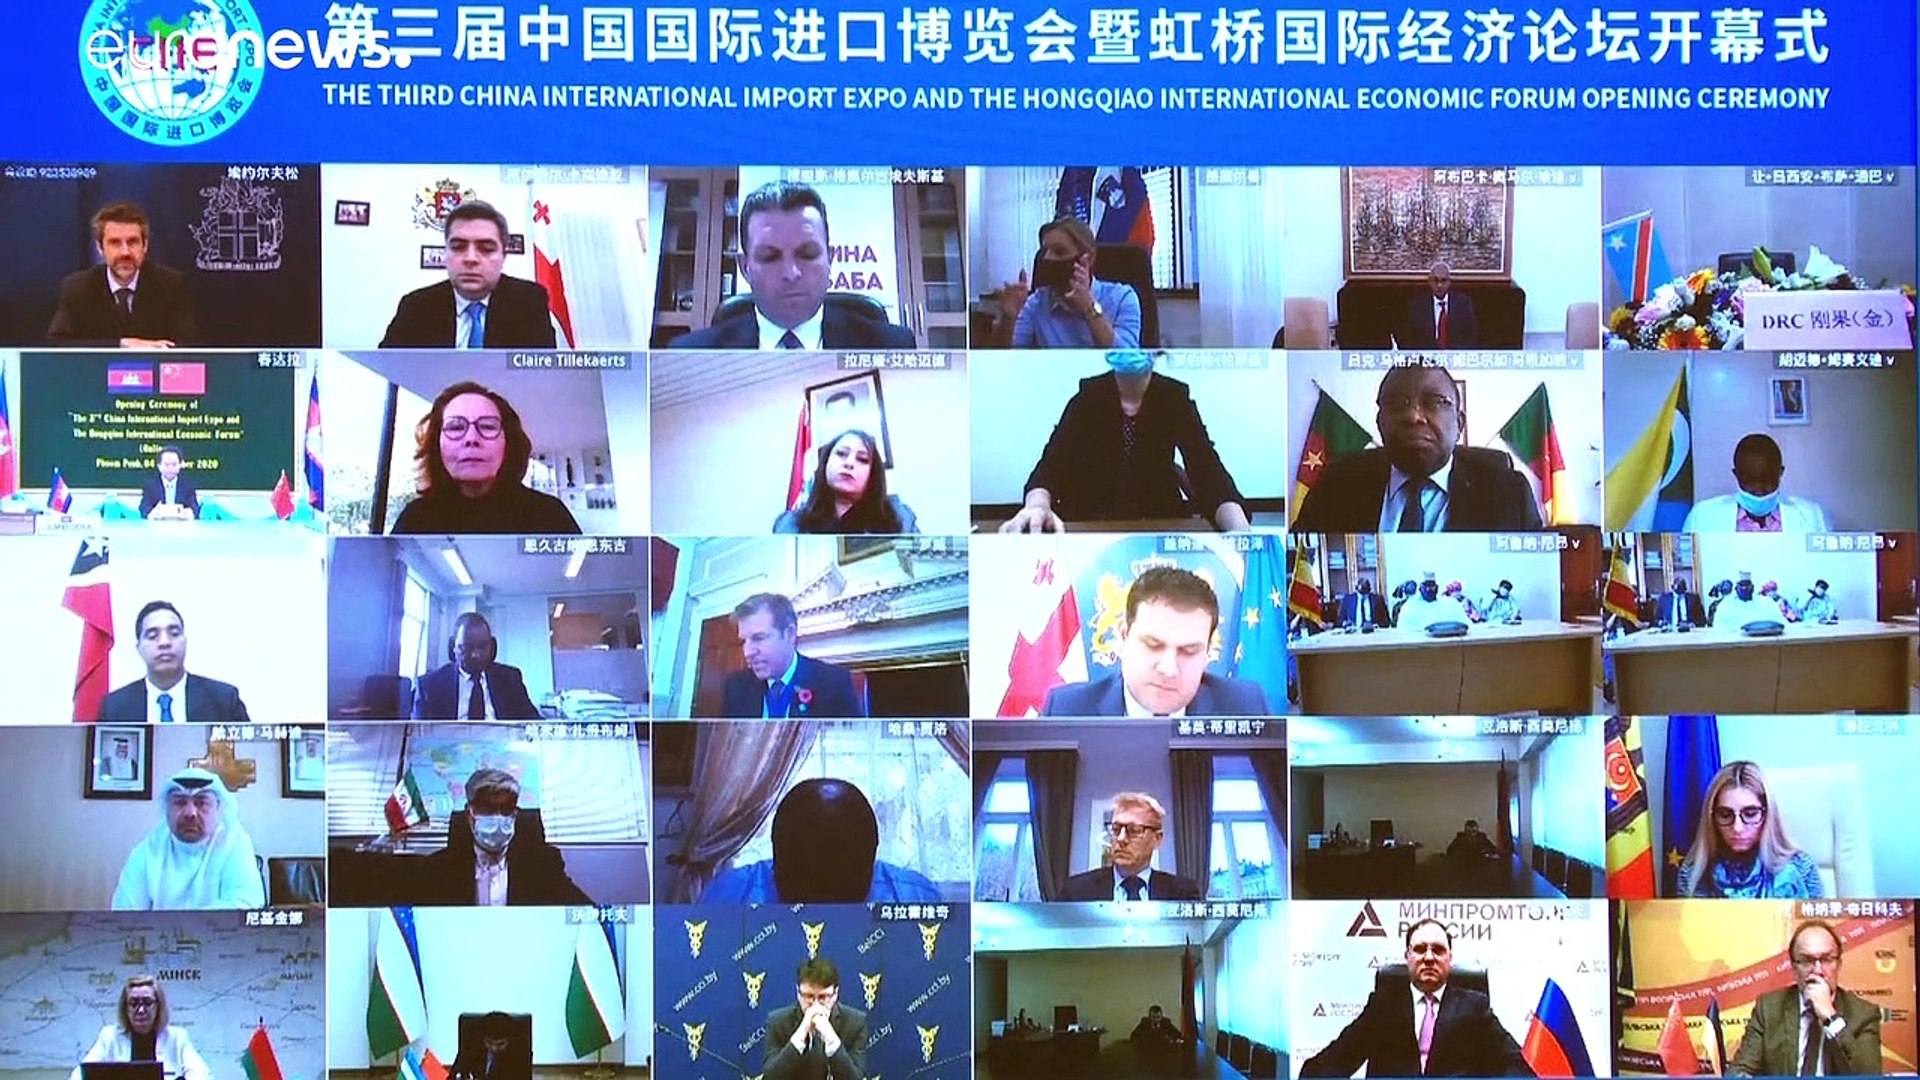 ⁣Új világrend kialakulásáról beszélt Orbán Viktor a kínai importexpón